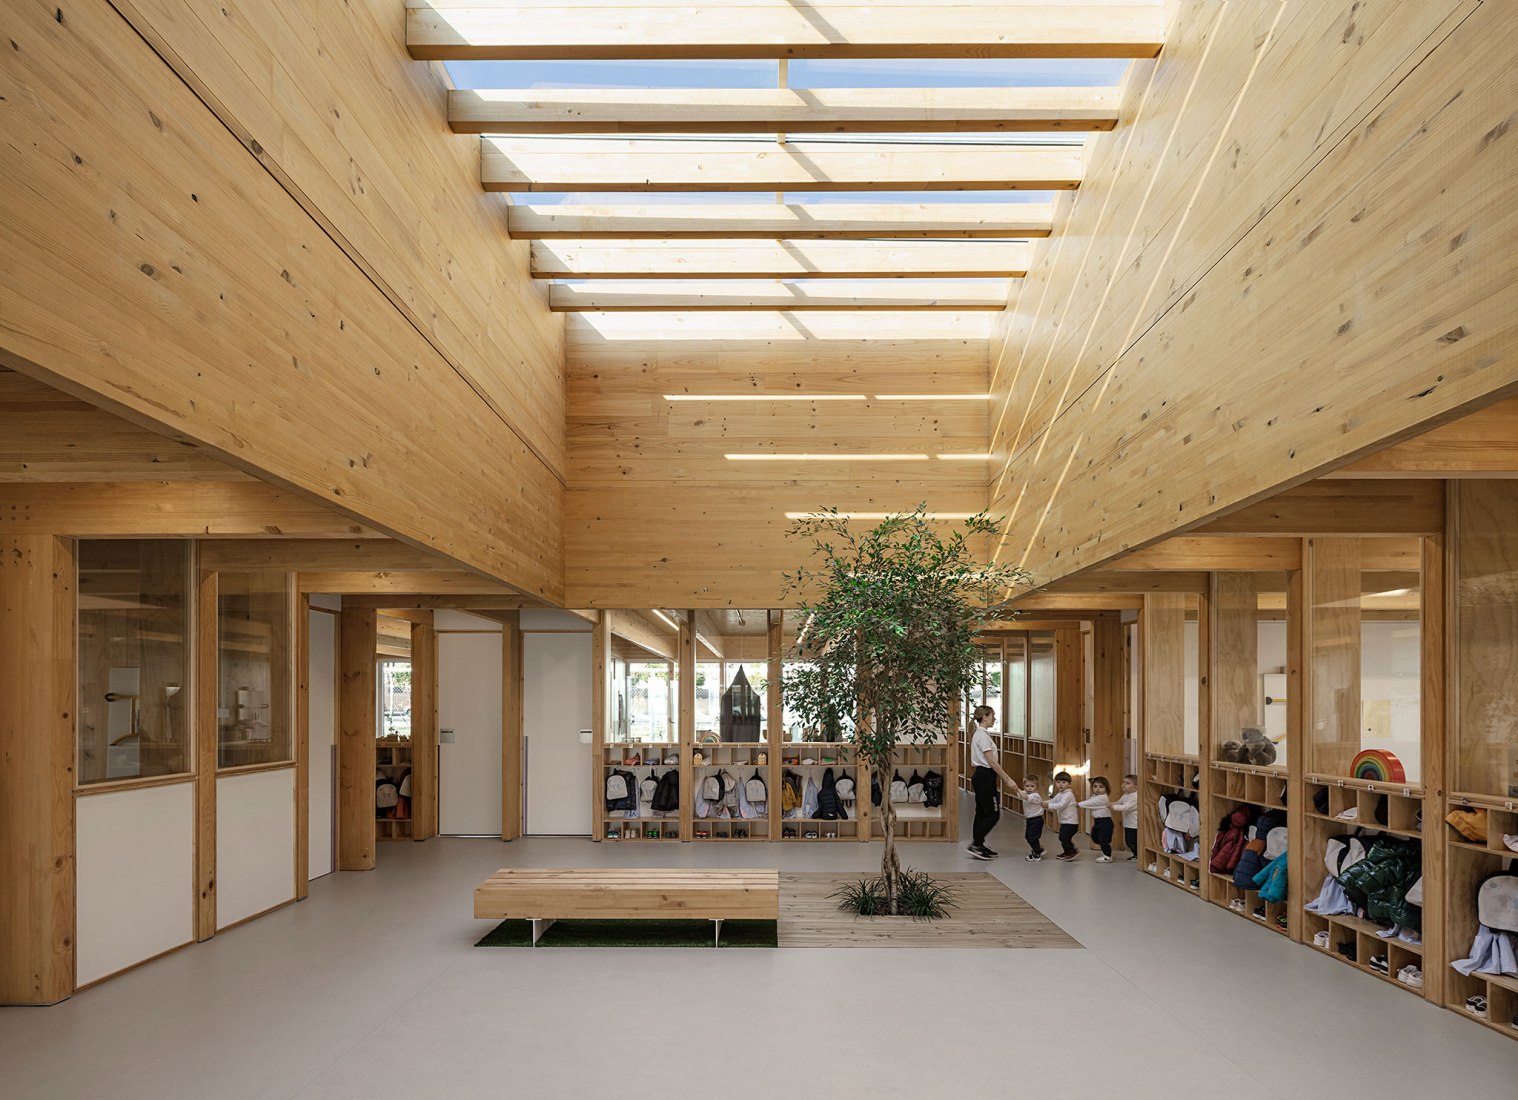 El Bressol kindergarten by bxd arquitectura. Photograph by Aleix Bagué 